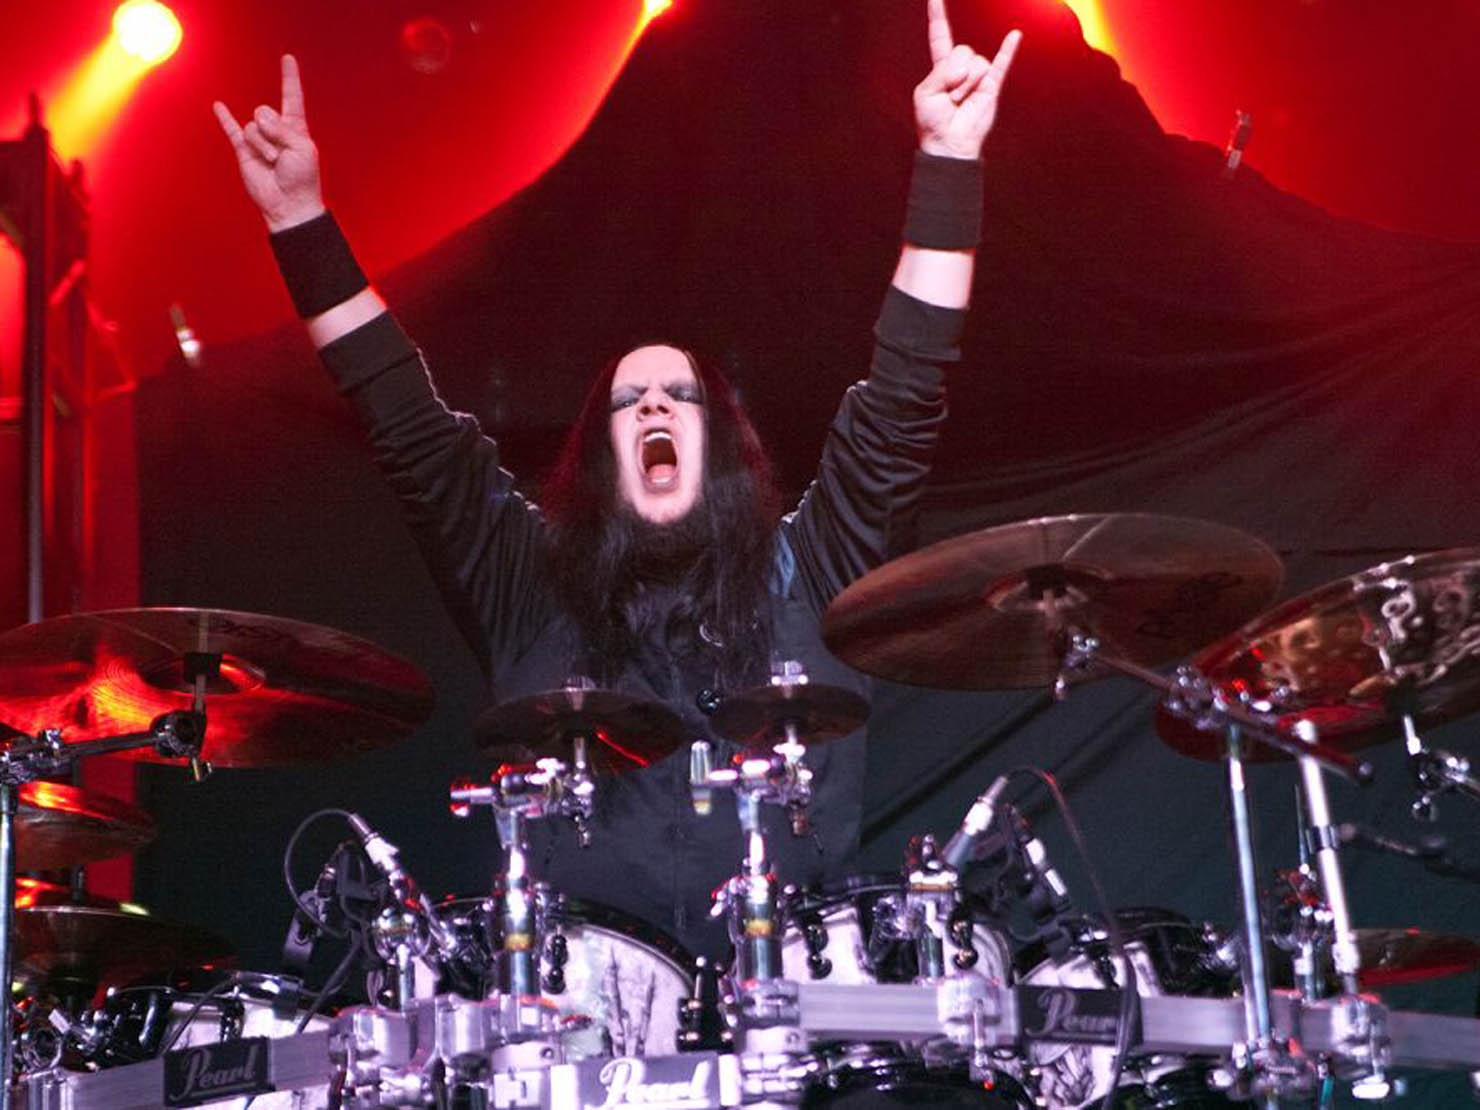 Πέθανε ο συνιδρυτής των Slipknot Joey Jordison, στα 46 του